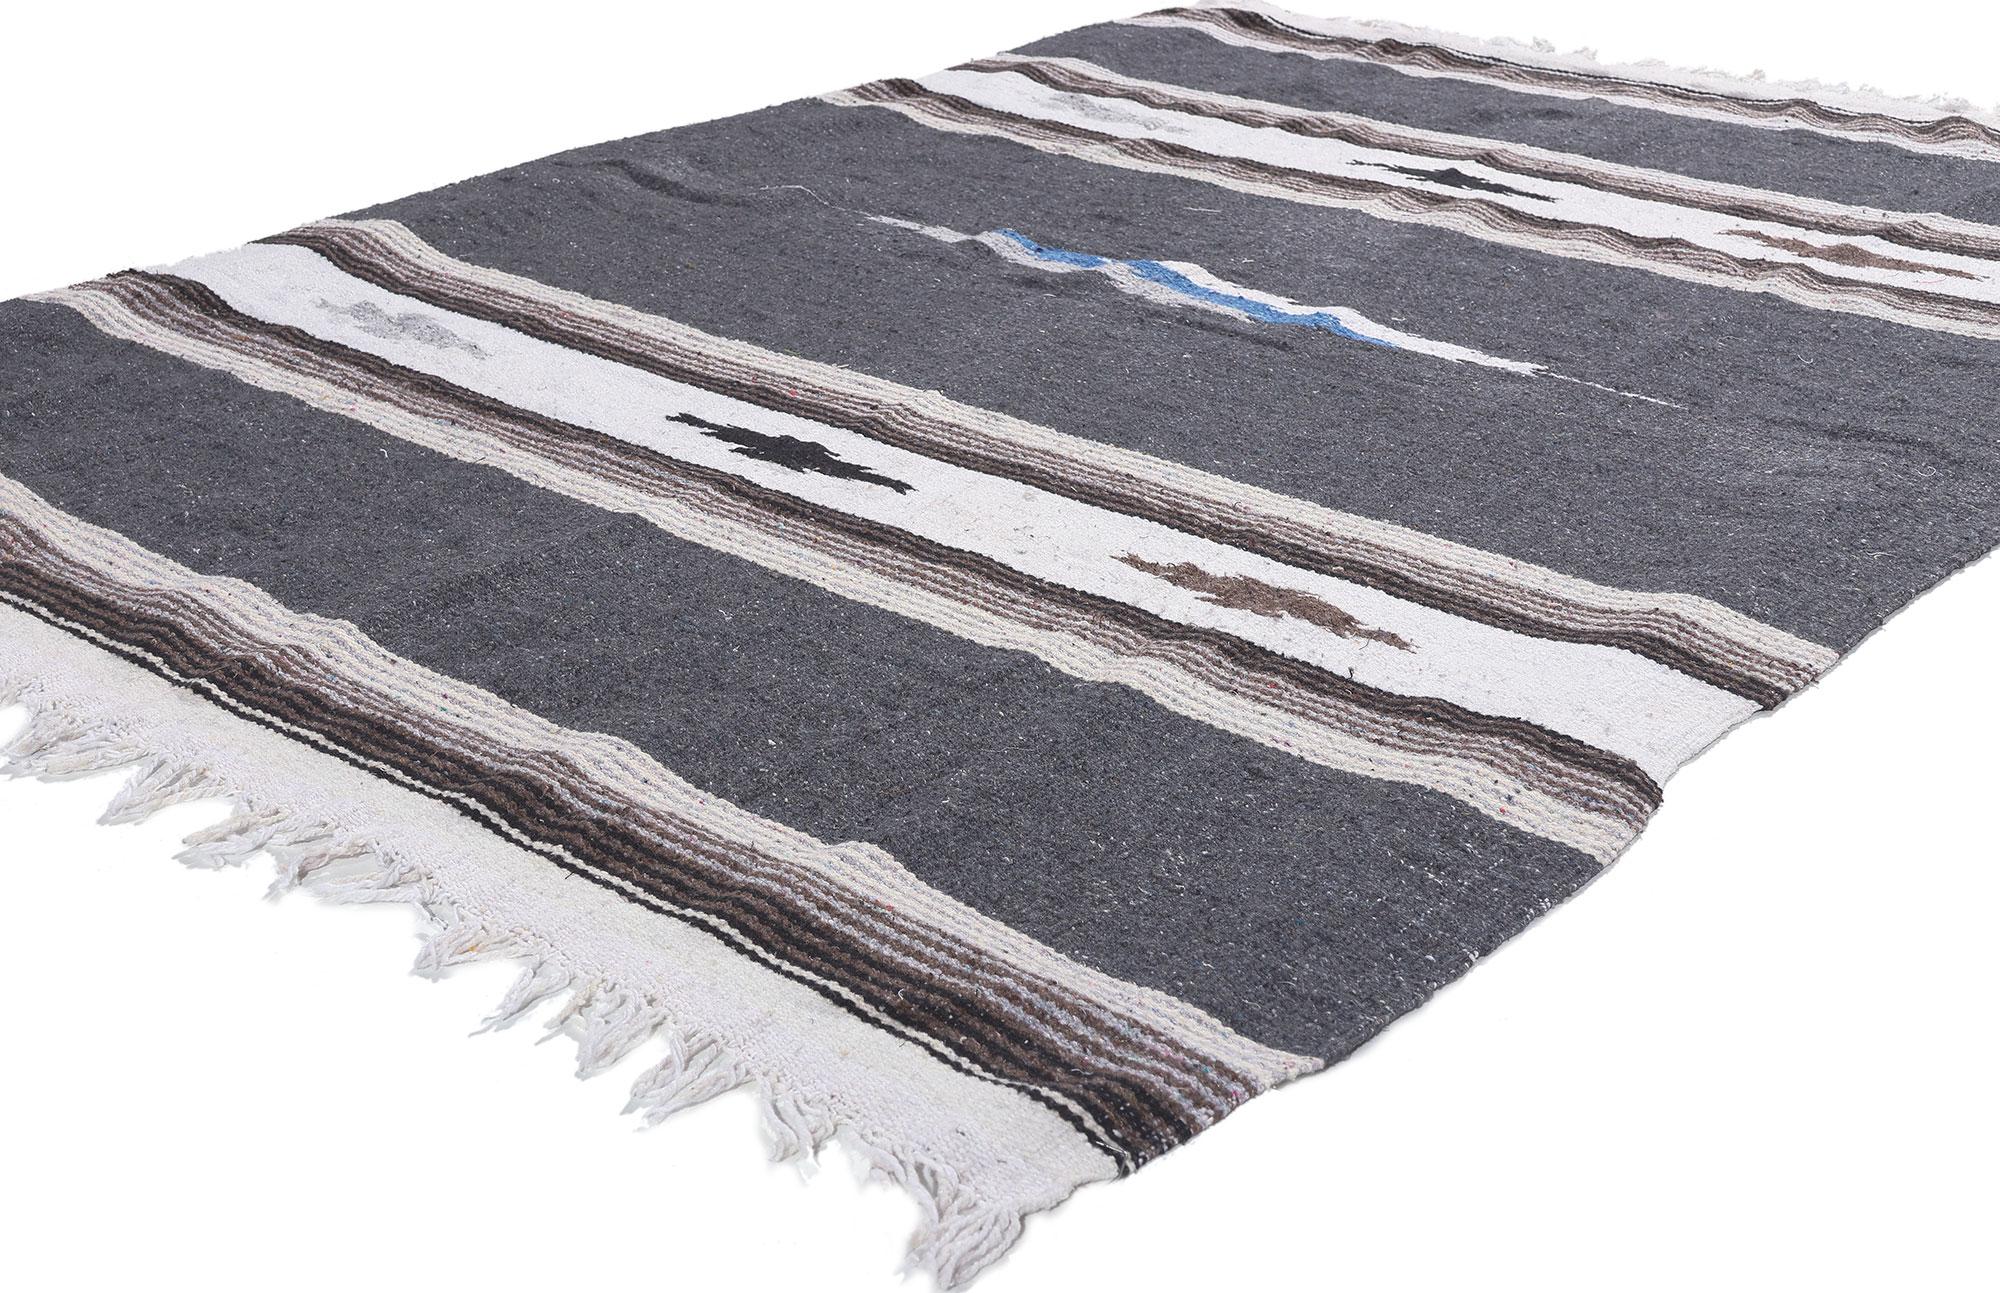 78551 Mexikanischer Serape-Decken-Kilim-Teppich, 04'05 x 06'04.
Dieser handgewebte mexikanische Serapi-Kelimteppich im Stil des Südwestens und mit rustikaler Sensibilität ist eine fesselnde Vision gewebter Schönheit. Das auffällige geometrische